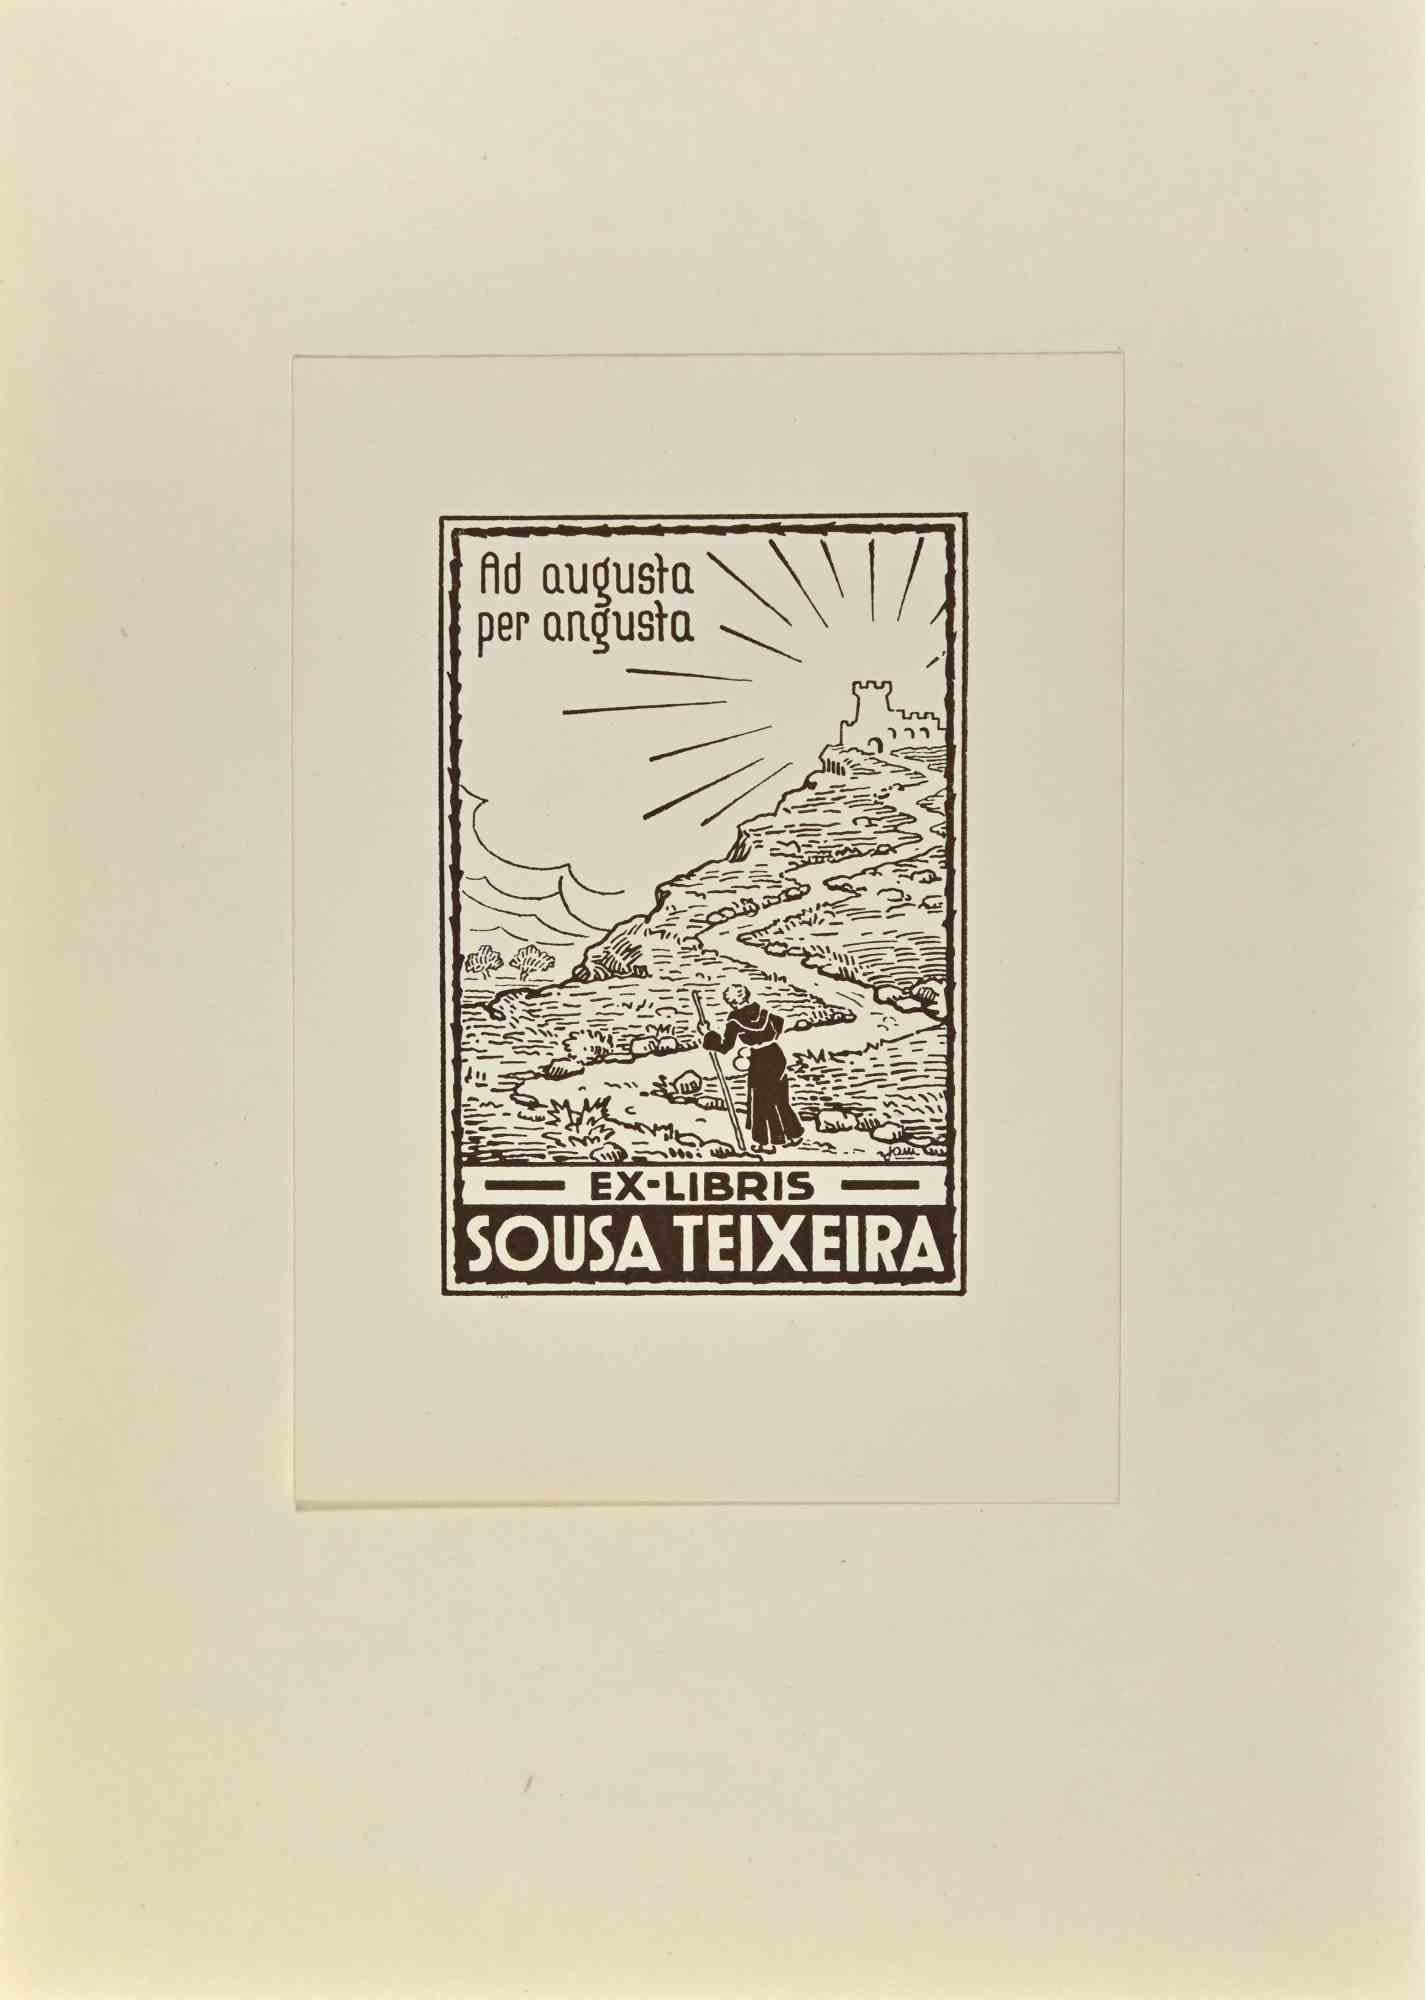  Ex Libris - Sousa Teixeira - Woodcut - Mid 20th Century